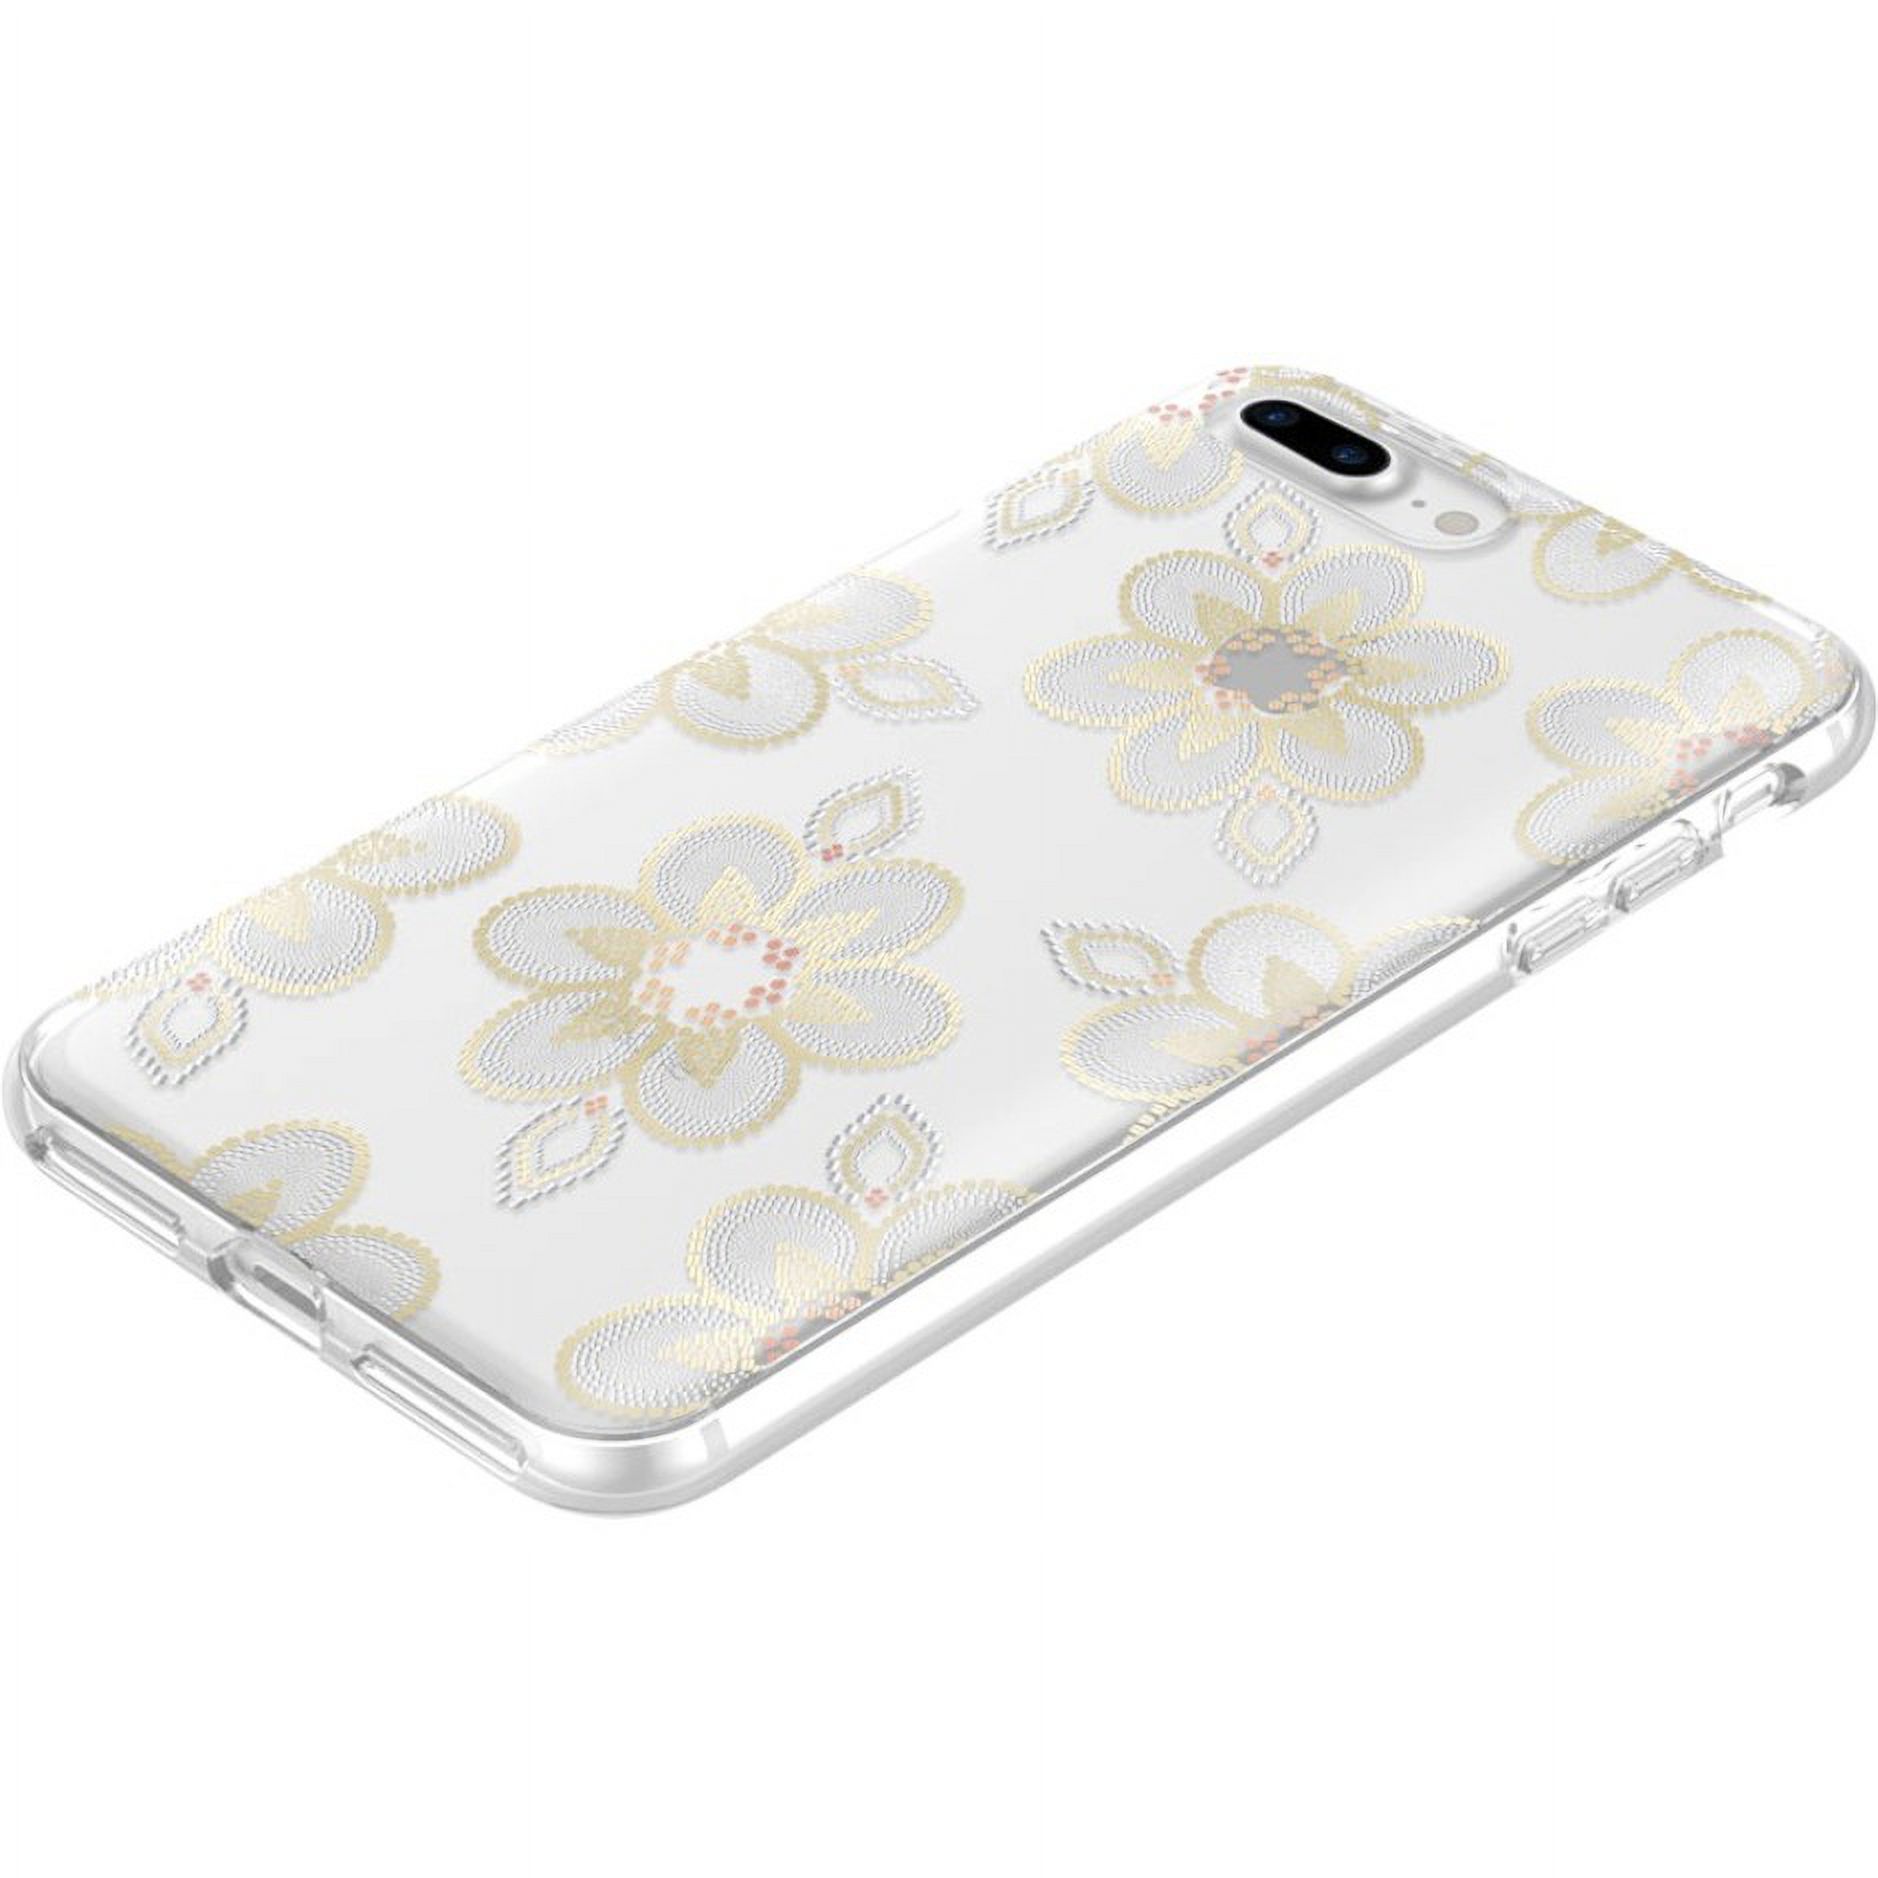 Incipio Beaded Floral Design Series Classic for iPhone 8 Plus - image 1 of 7